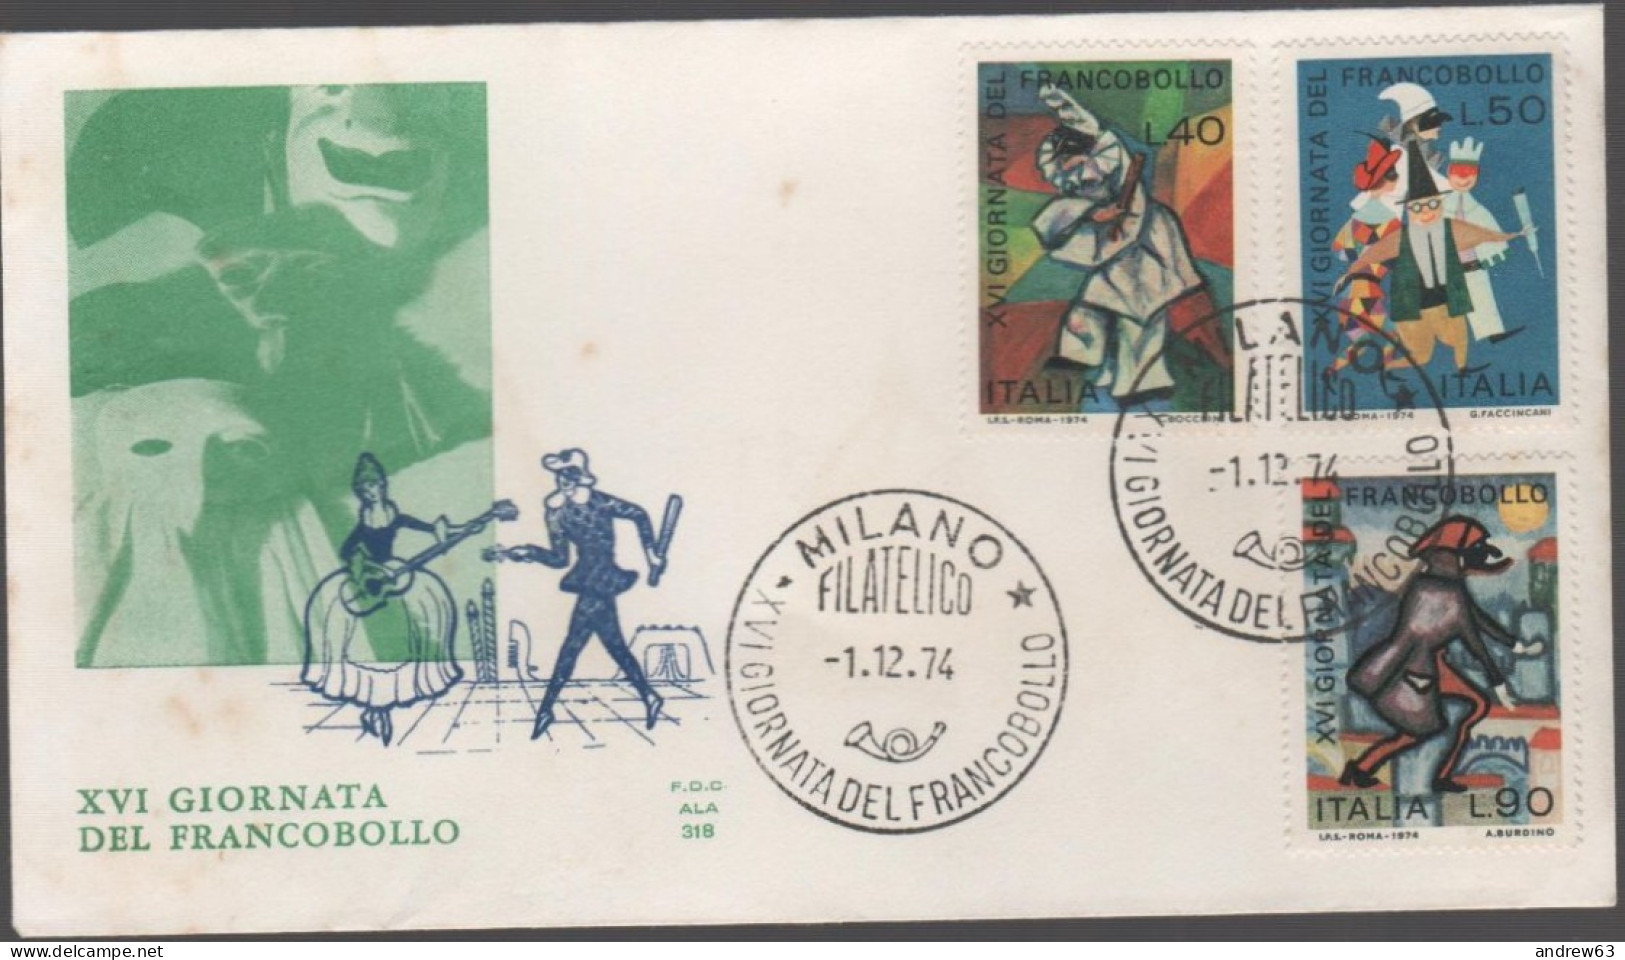 ITALIA - ITALIE - ITALY - 1974 - 16ª Giornata Del Francobollo - FDC ALA - FDC